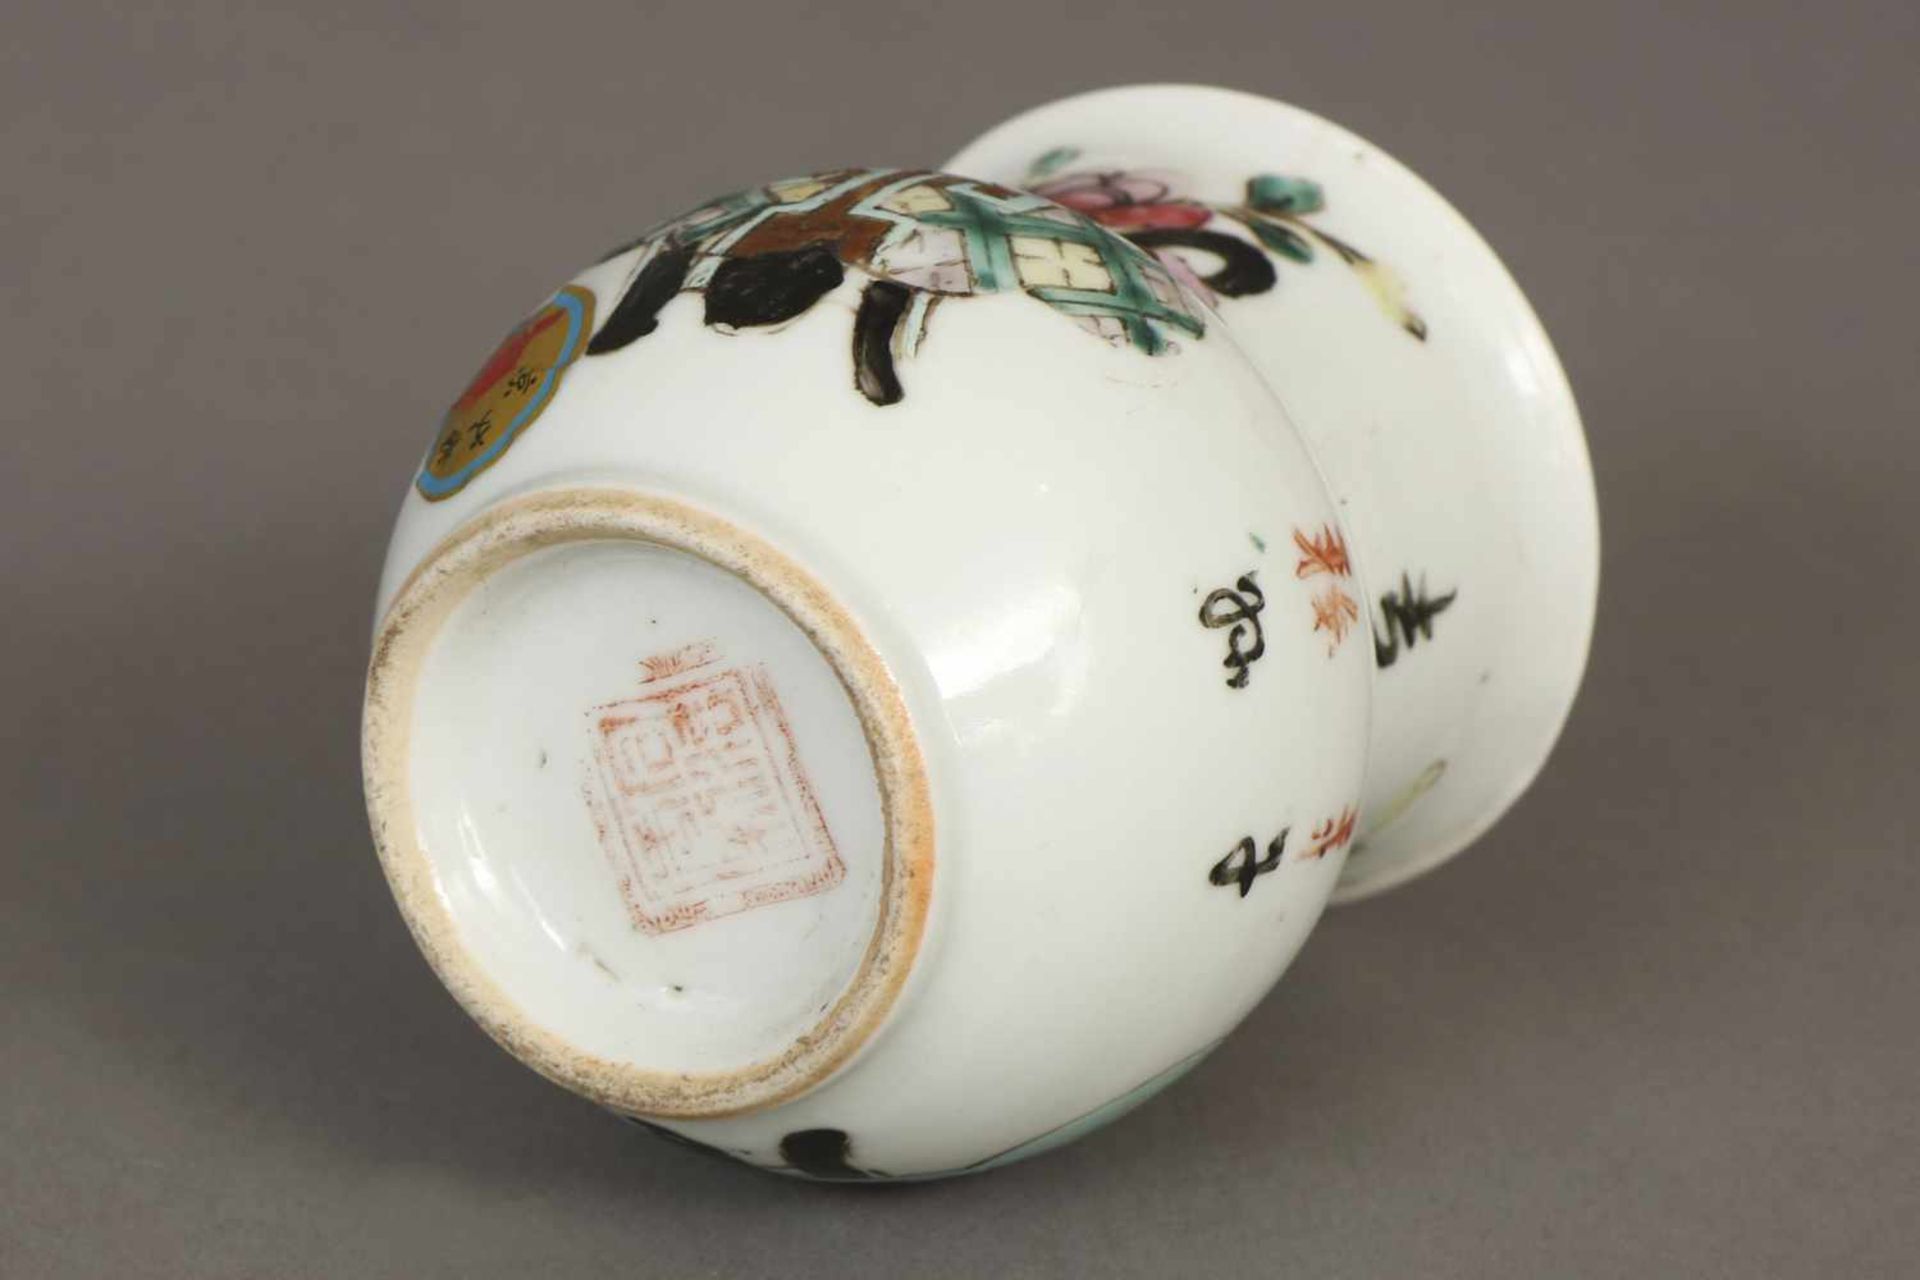 Chinesische Porzellanvasewohl Republikzeit, schau- und rückseitig Vasen- und Floraldekor, am Boden - Bild 2 aus 2